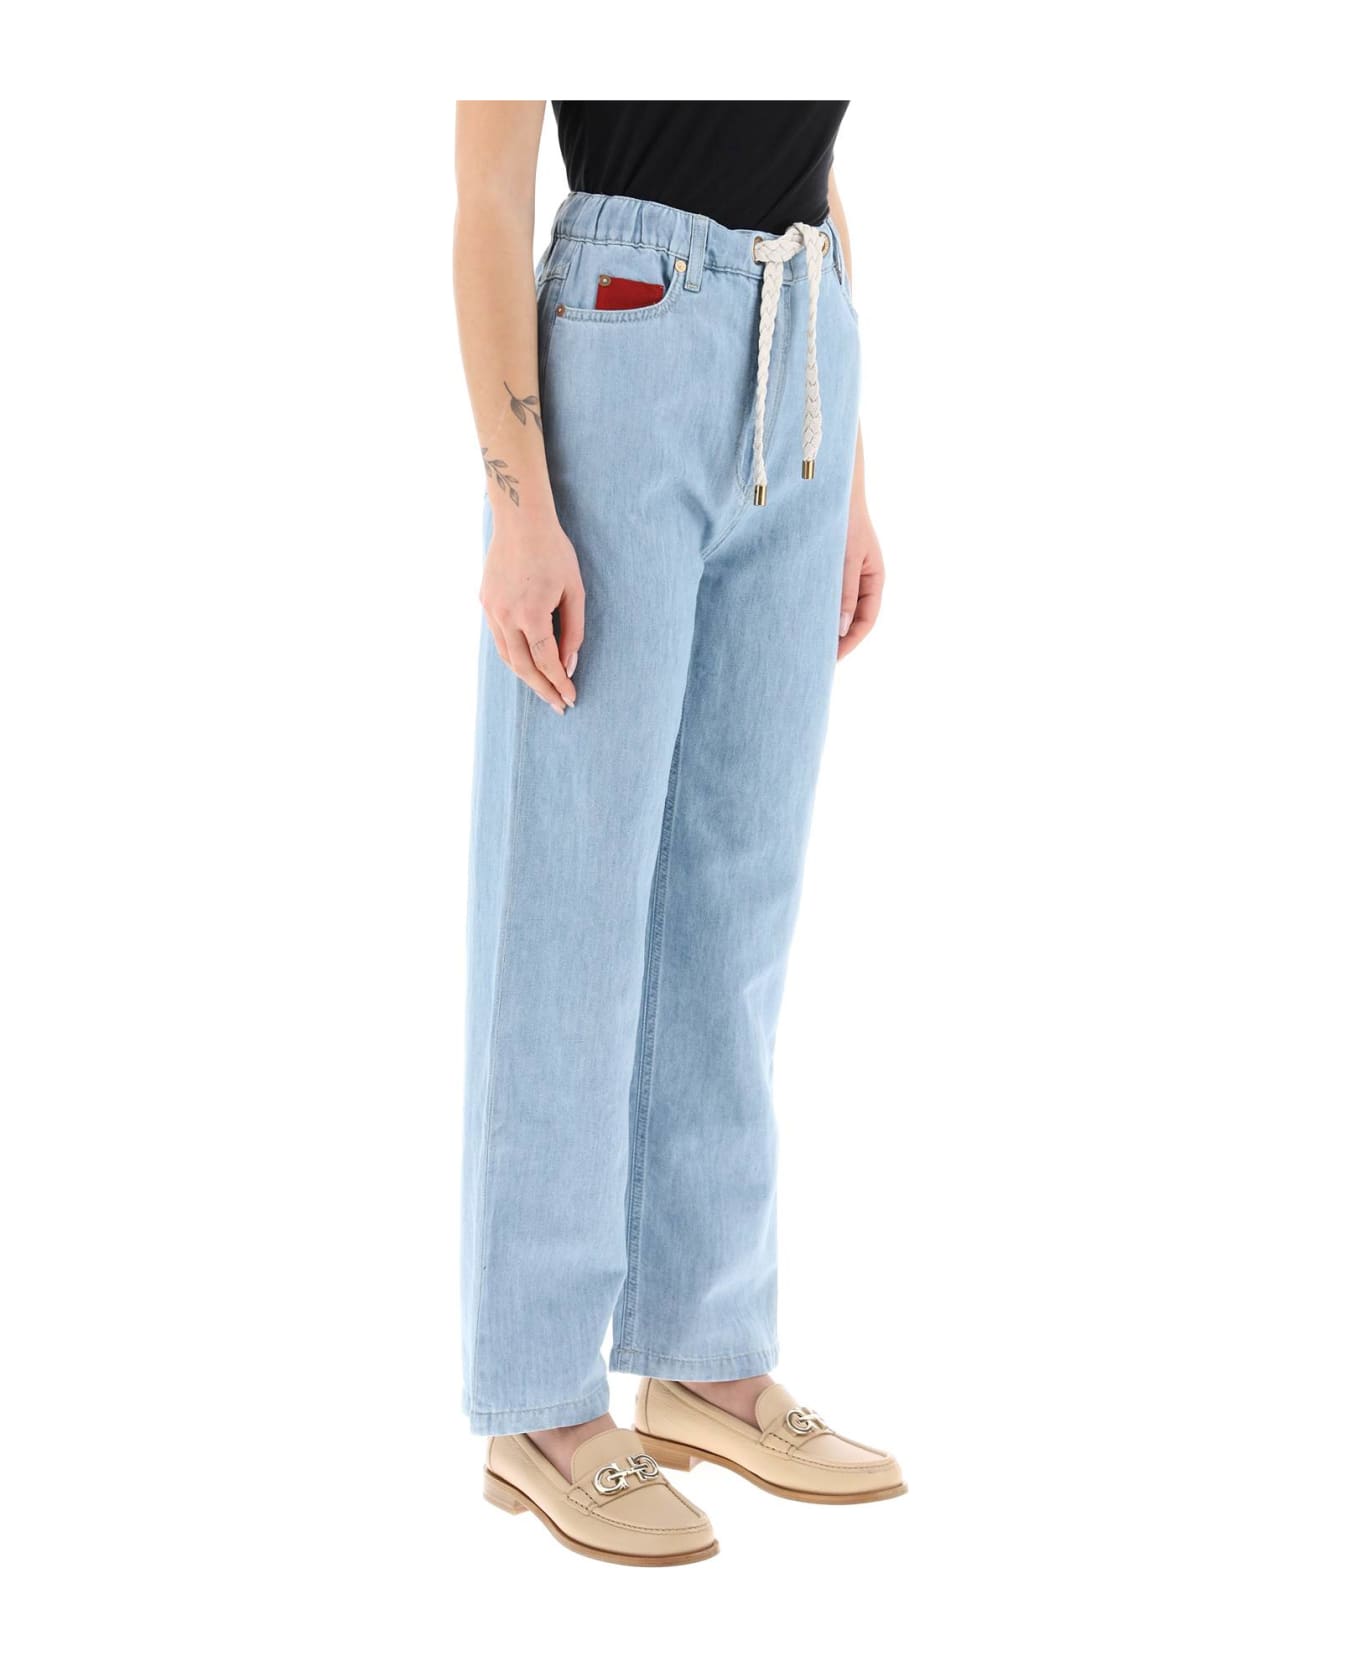 Agnona Drawstring Jeans In Light Denim - BLEACHED (Light blue) デニム